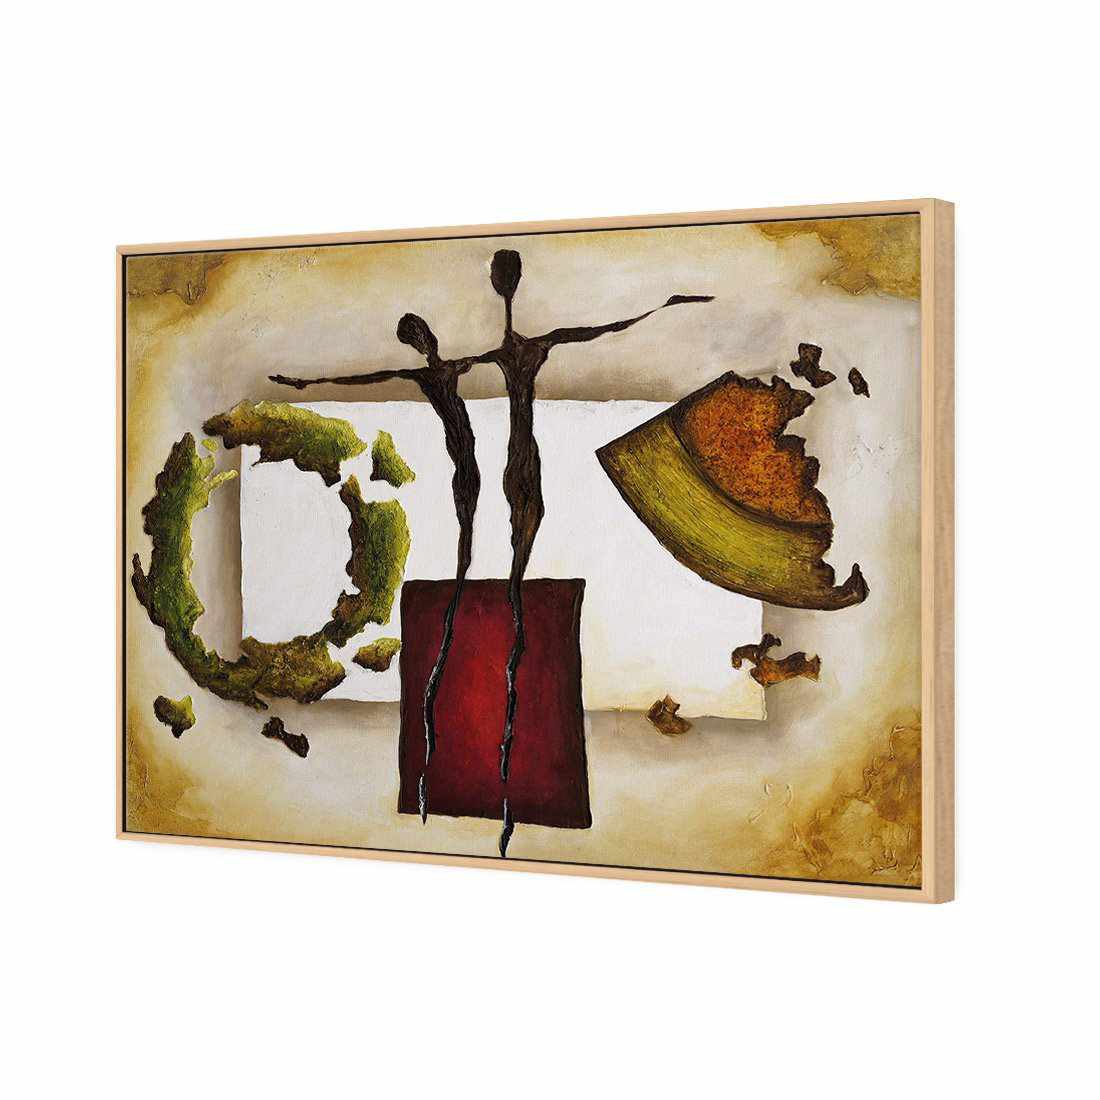 Balancing Puzzle Canvas Art-Canvas-Wall Art Designs-45x30cm-Canvas - Oak Frame-Wall Art Designs